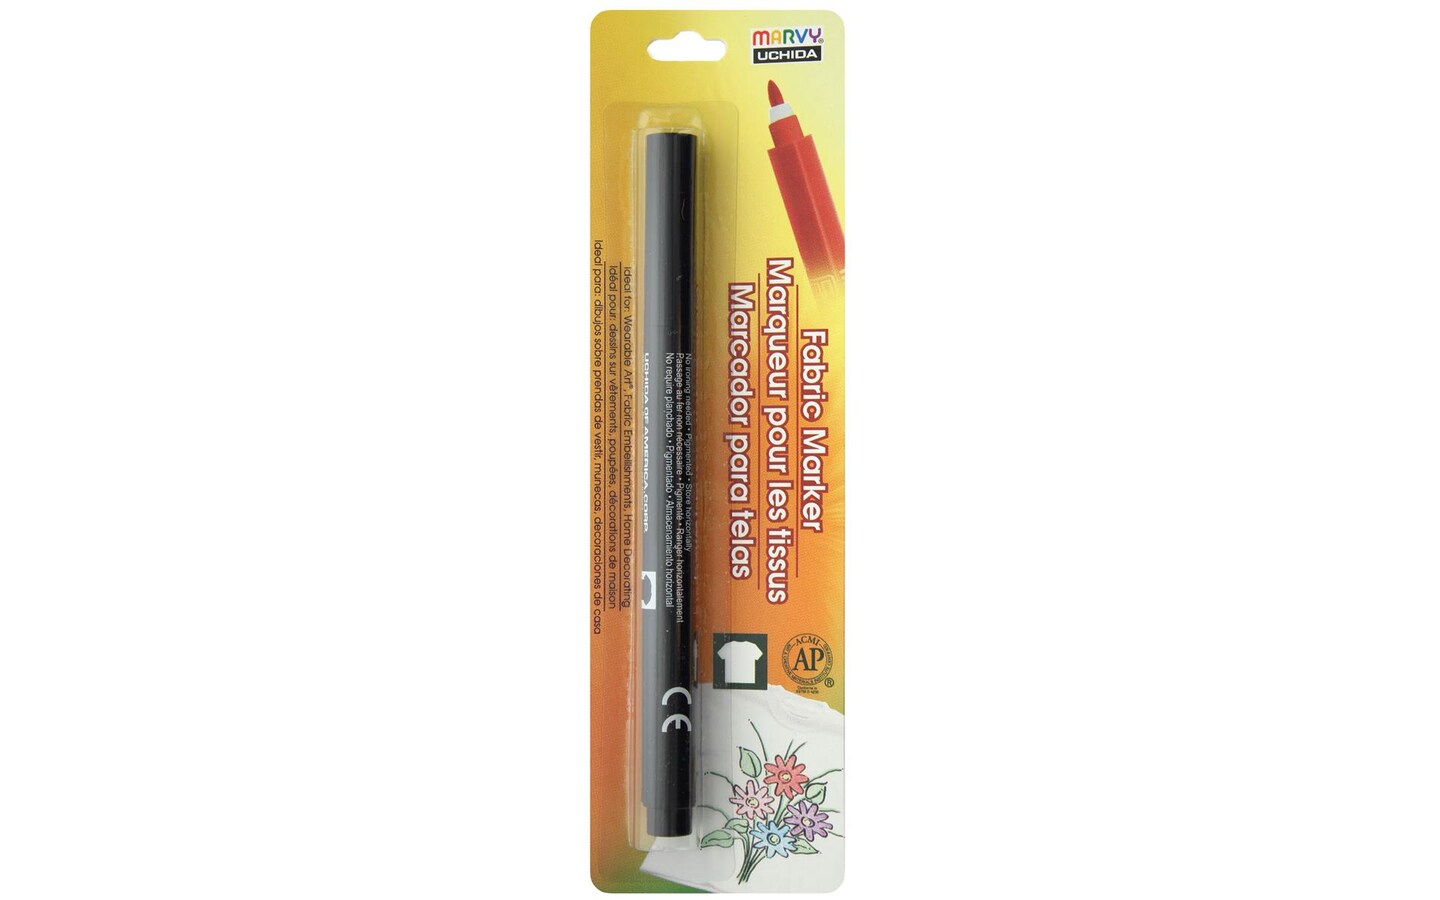 Loops & Threads™ Marking Pencils